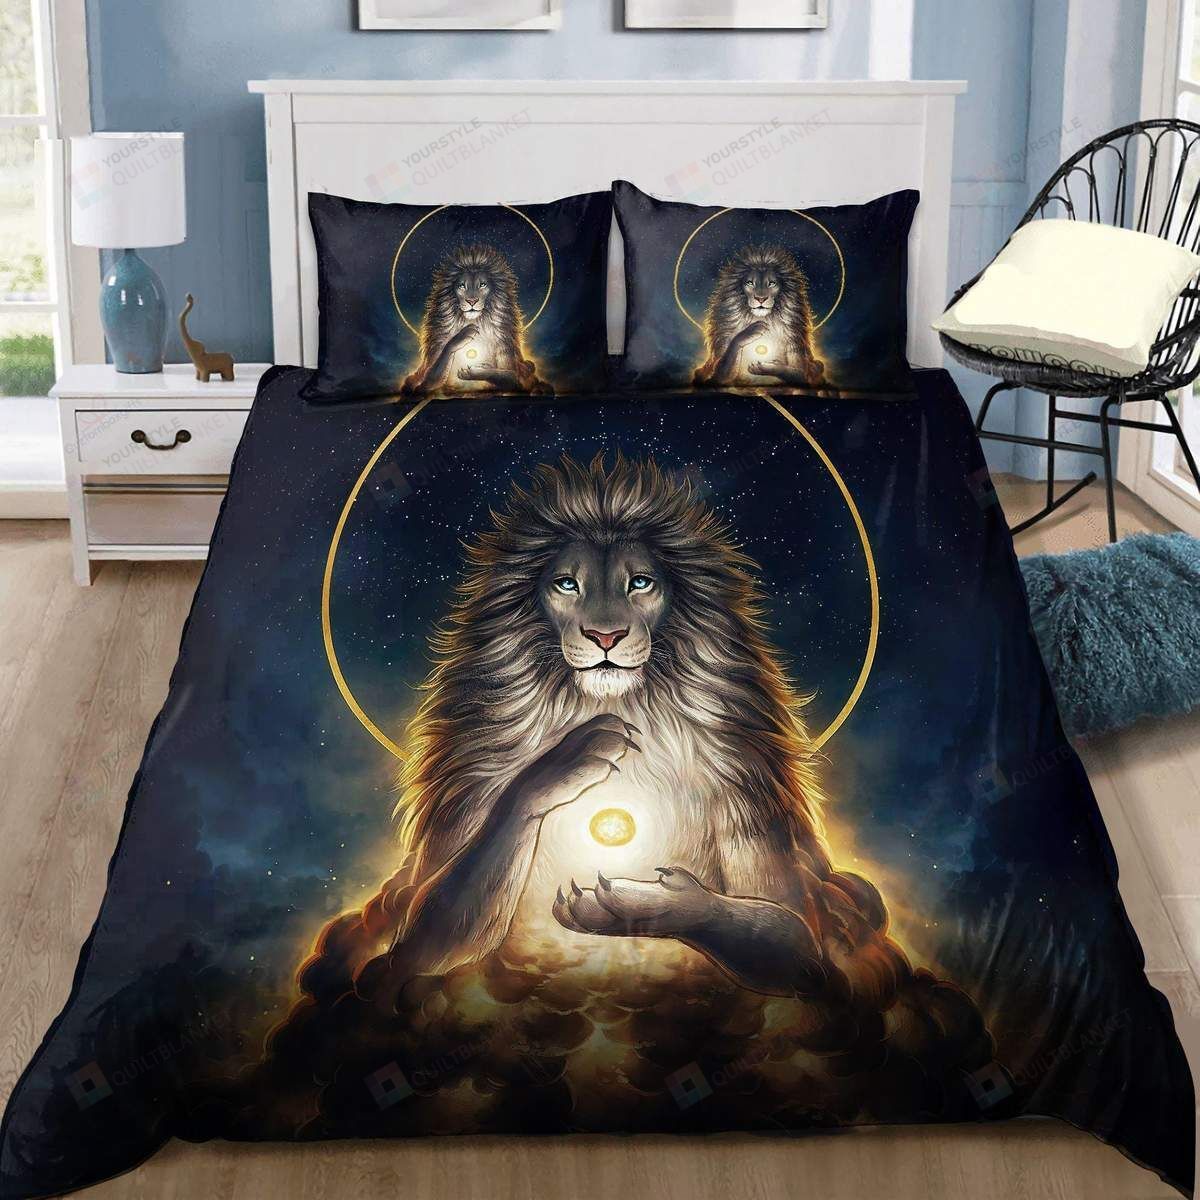 Magical Lion God Bedding Duvet Cover Bedding Set